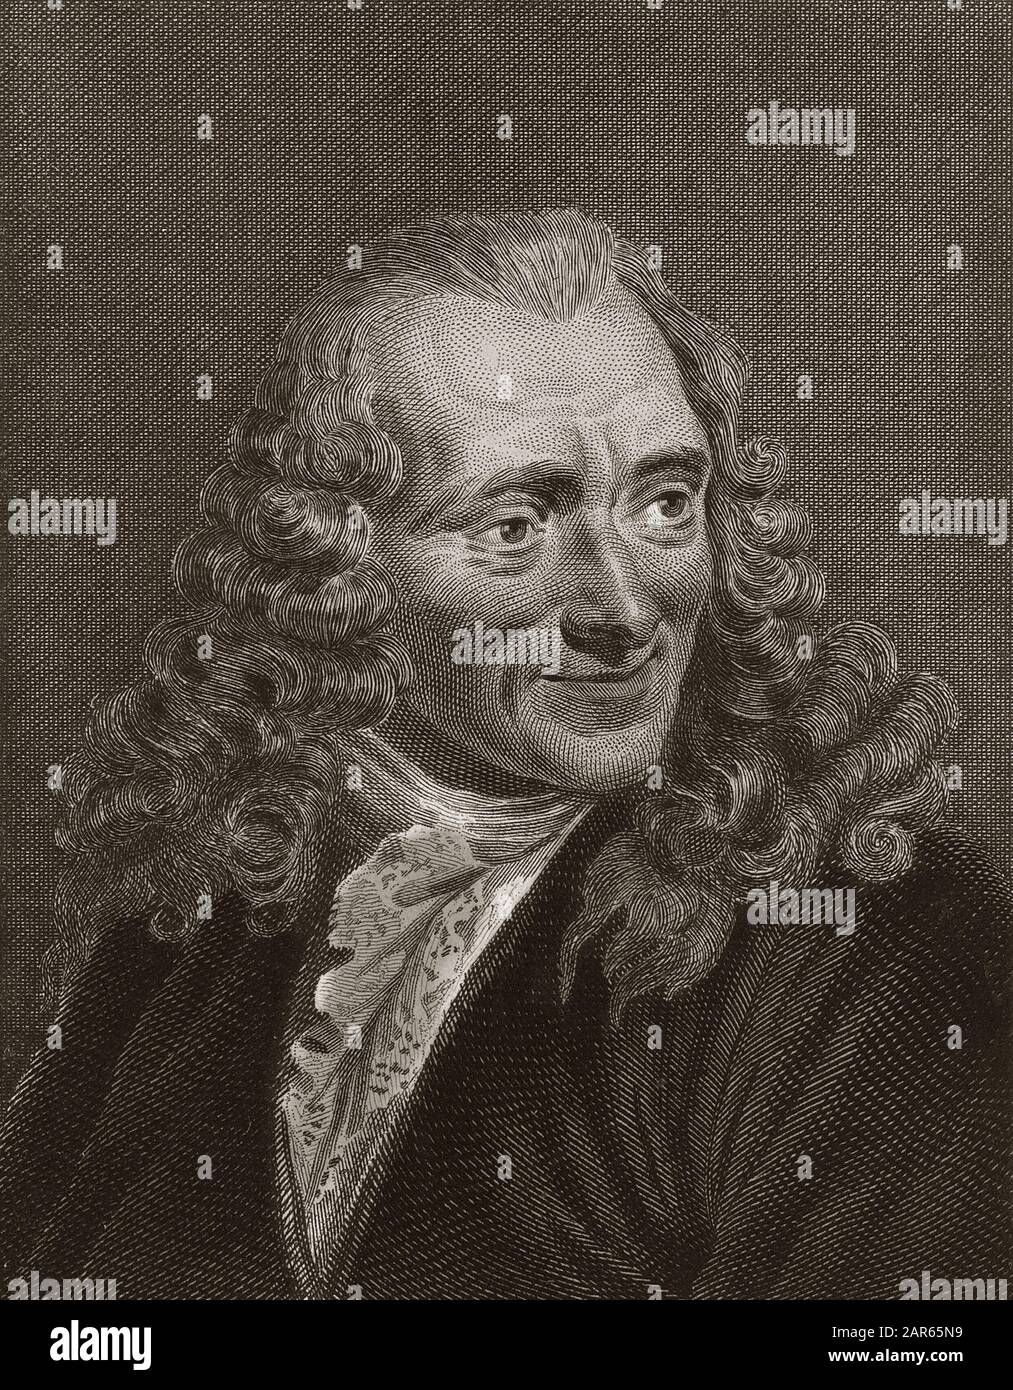 Portrait of Voltaire - engraving -  Francois-Marie Arouet de Voltaire dit Voltaire (1694-1778) - Stock Photo